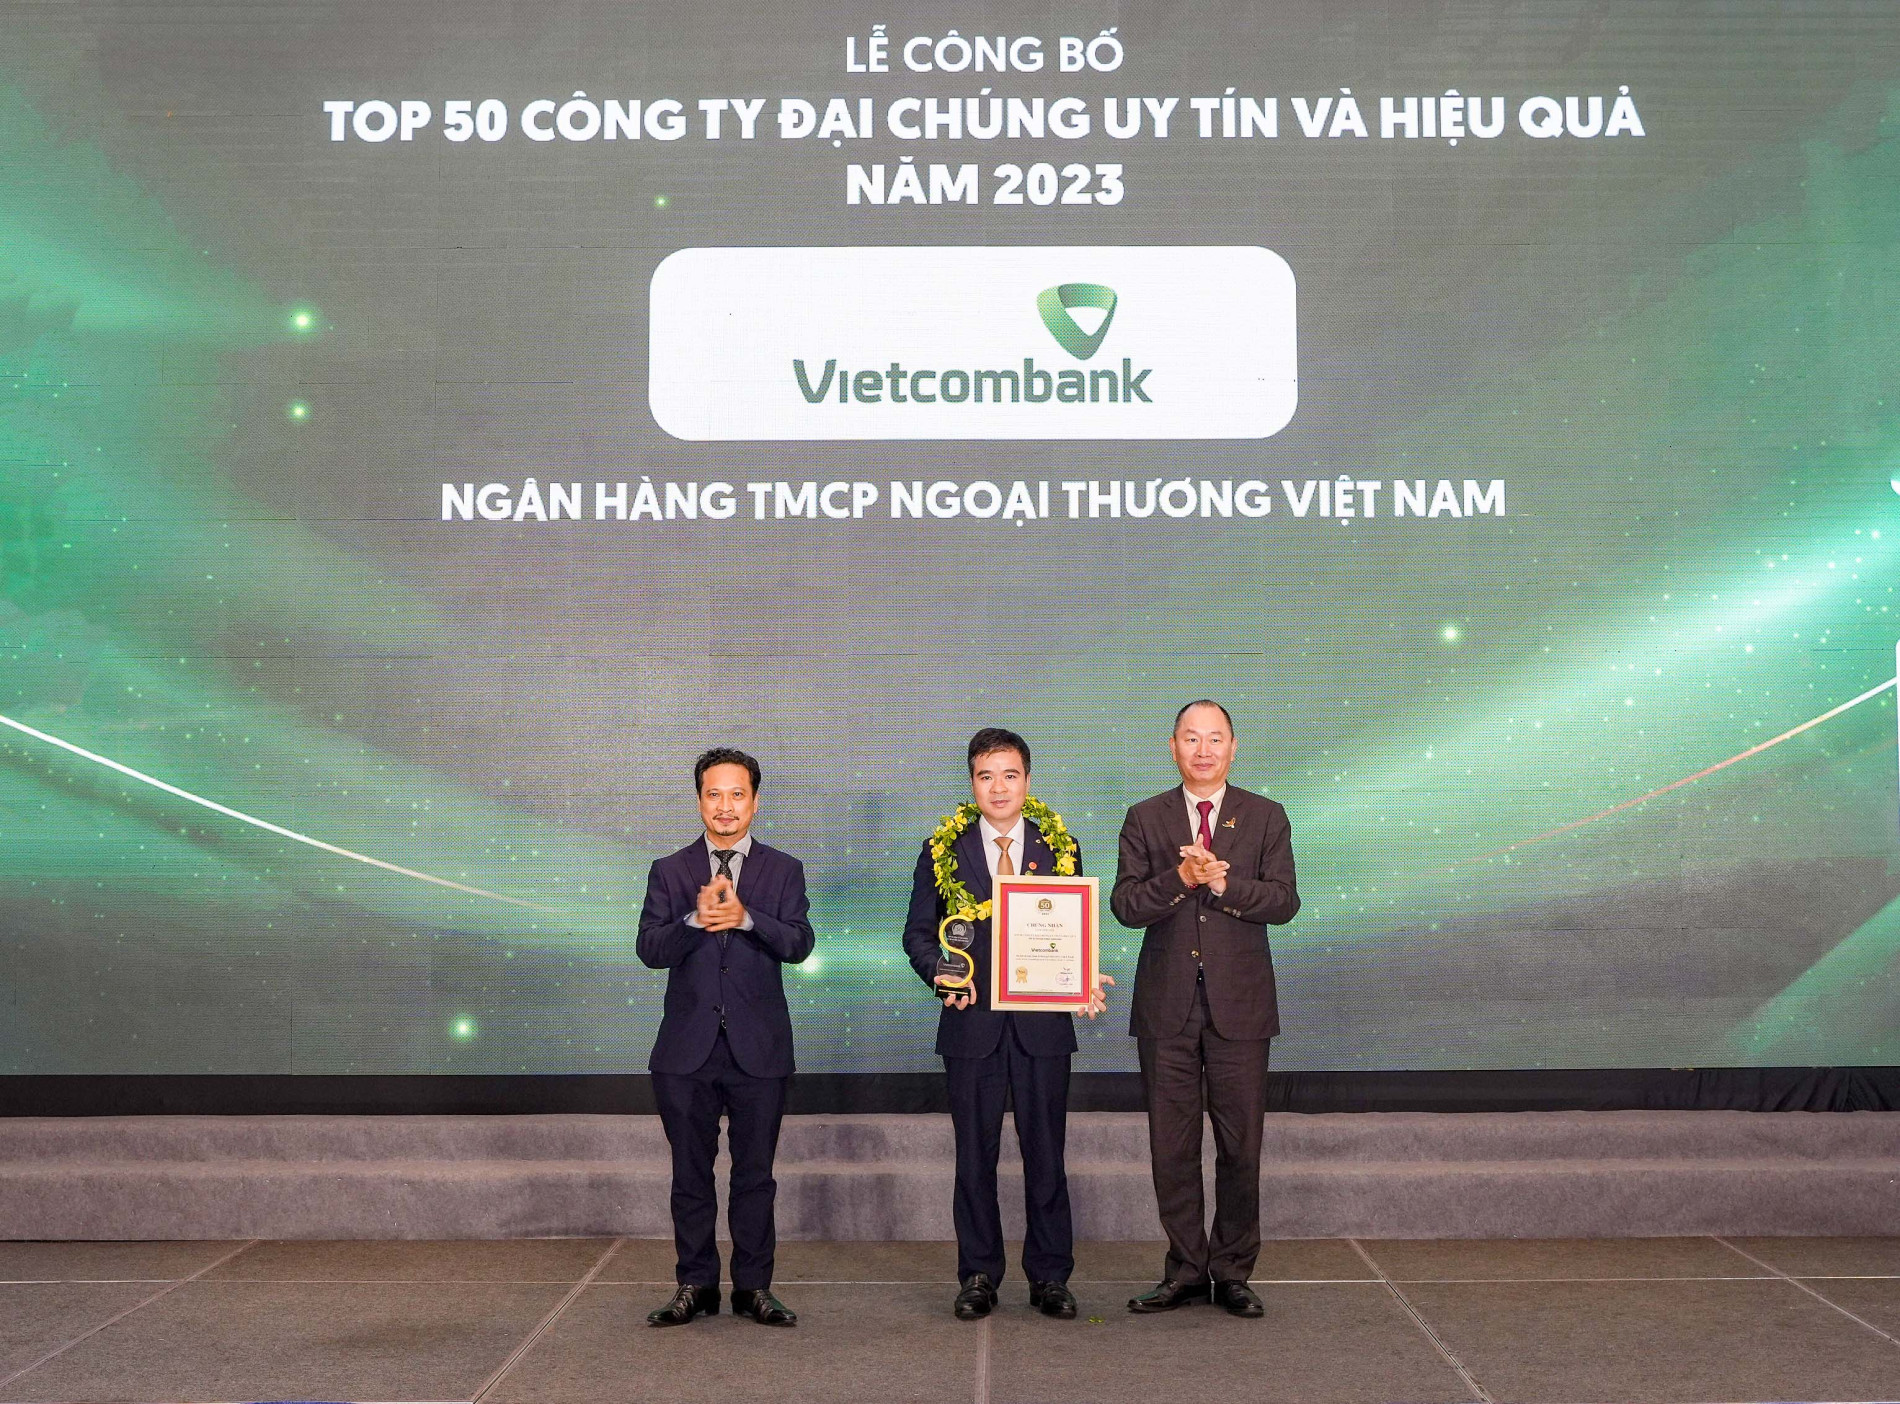 Đại diện Vietcombank (đứng giữa) nhận danh hiệu &amp;ldquo;C&amp;ocirc;ng ty đại ch&amp;uacute;ng uy t&amp;iacute;n v&amp;agrave; hiệu quả nhất Việt Nam năm 2023&amp;rdquo; từ Ban Tổ chức.